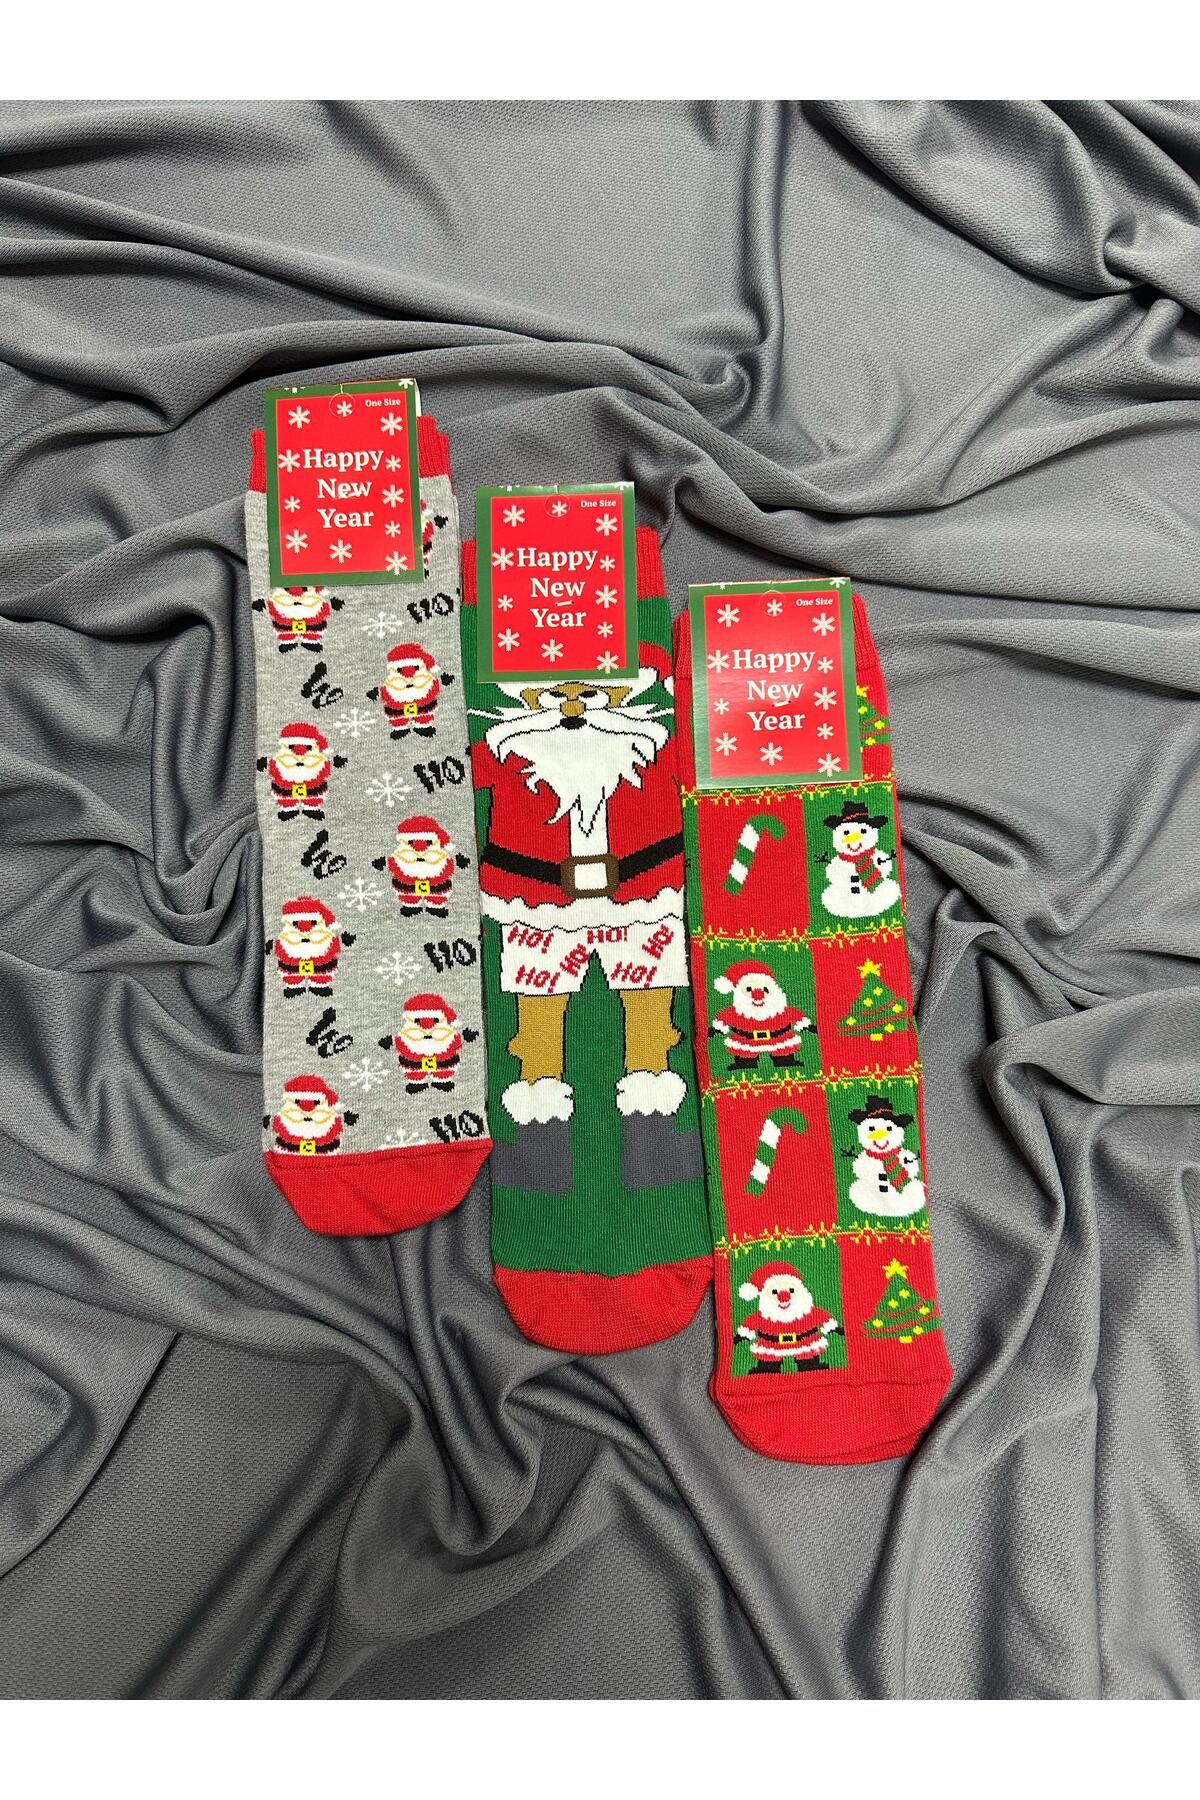 KRC & GLOBAL TEKSTİL Noel - Christmas Temalı Unisex Yılbaşı Çorapları 3'LÜ